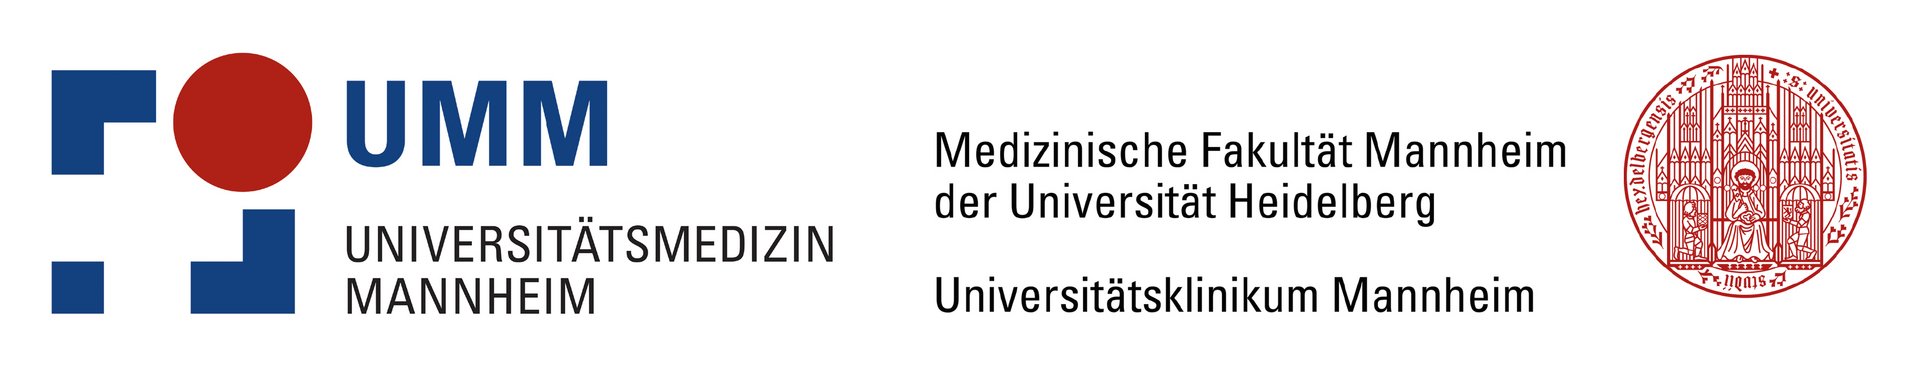 Logos "Universitätsmedizin Mannheim" und "Medizinische Fakultät Mannheim"